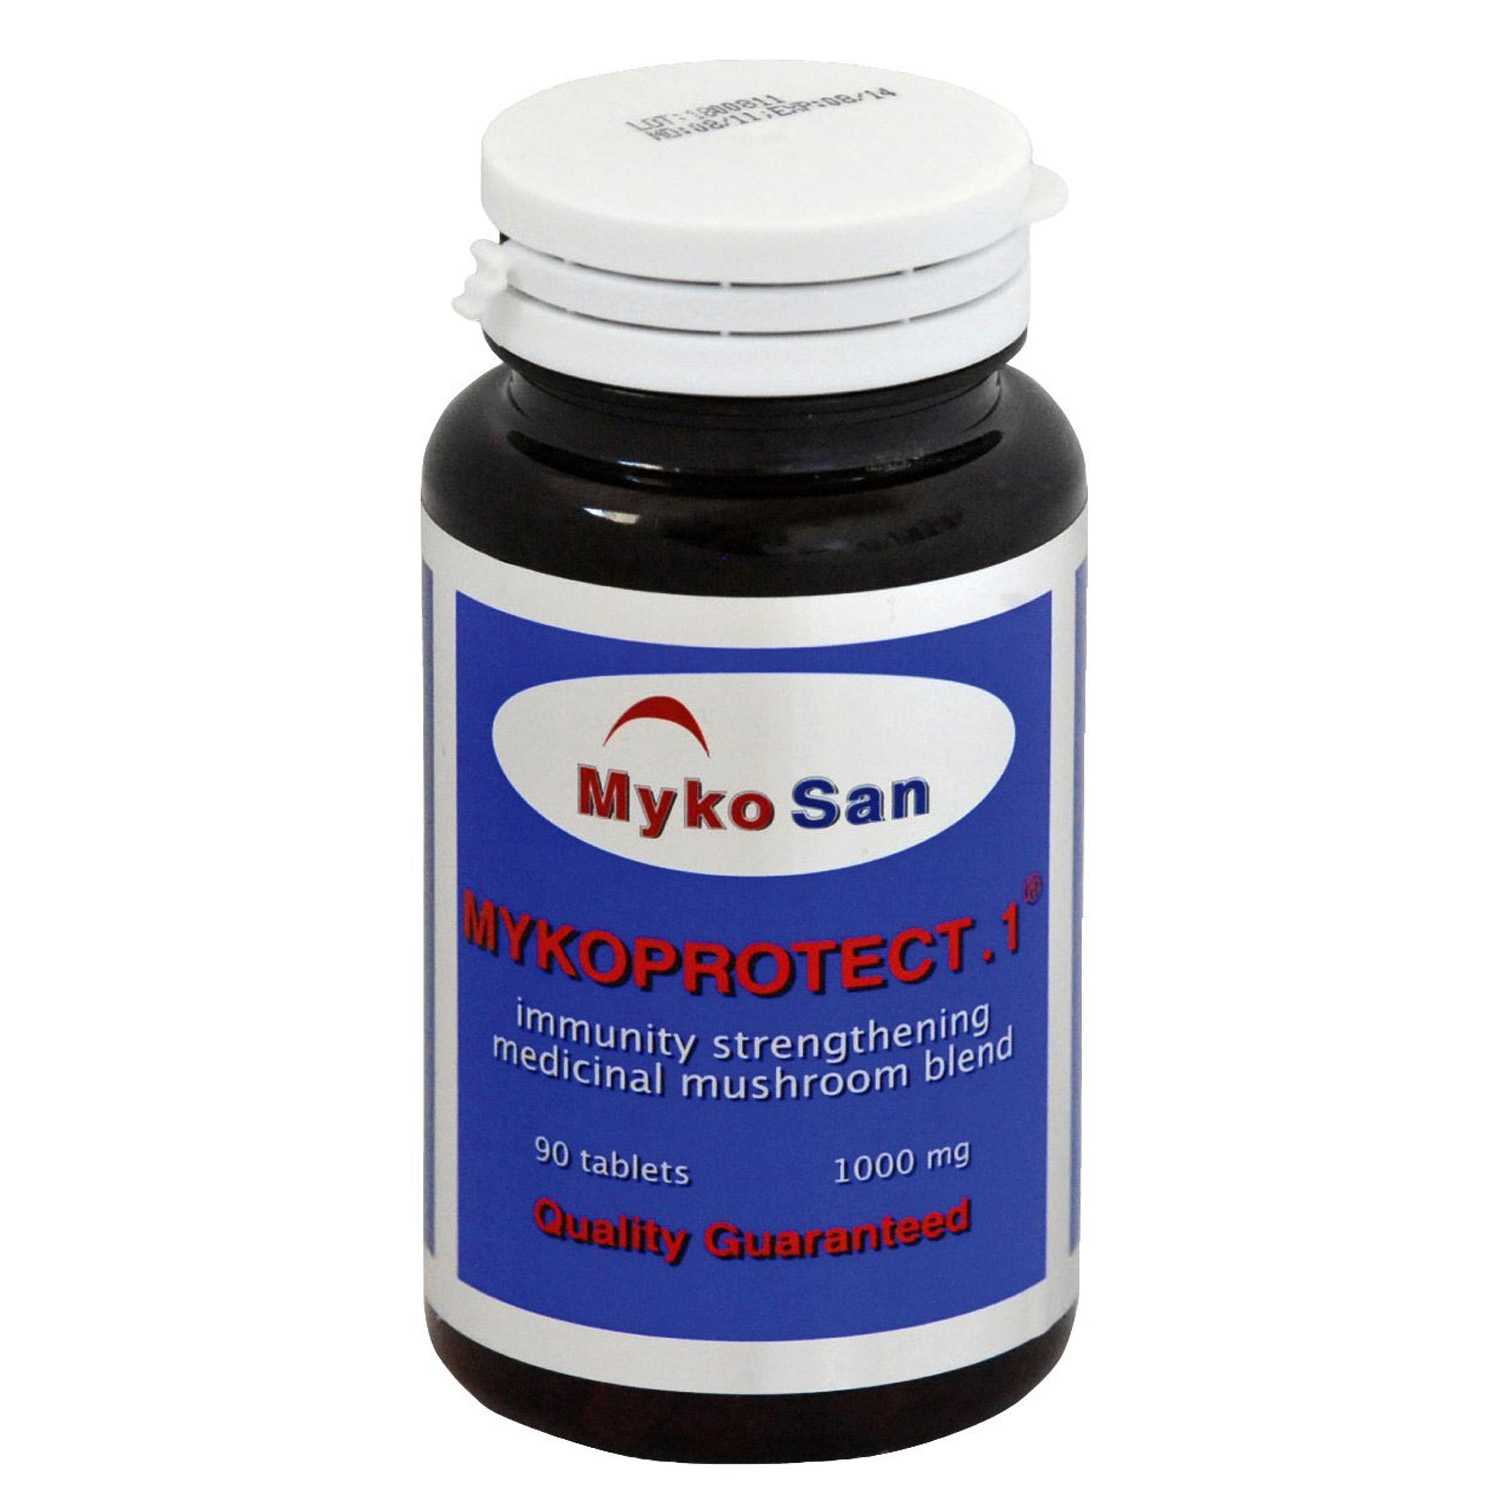 Mykoprotect.1 antiviral medicinal mushroom extract